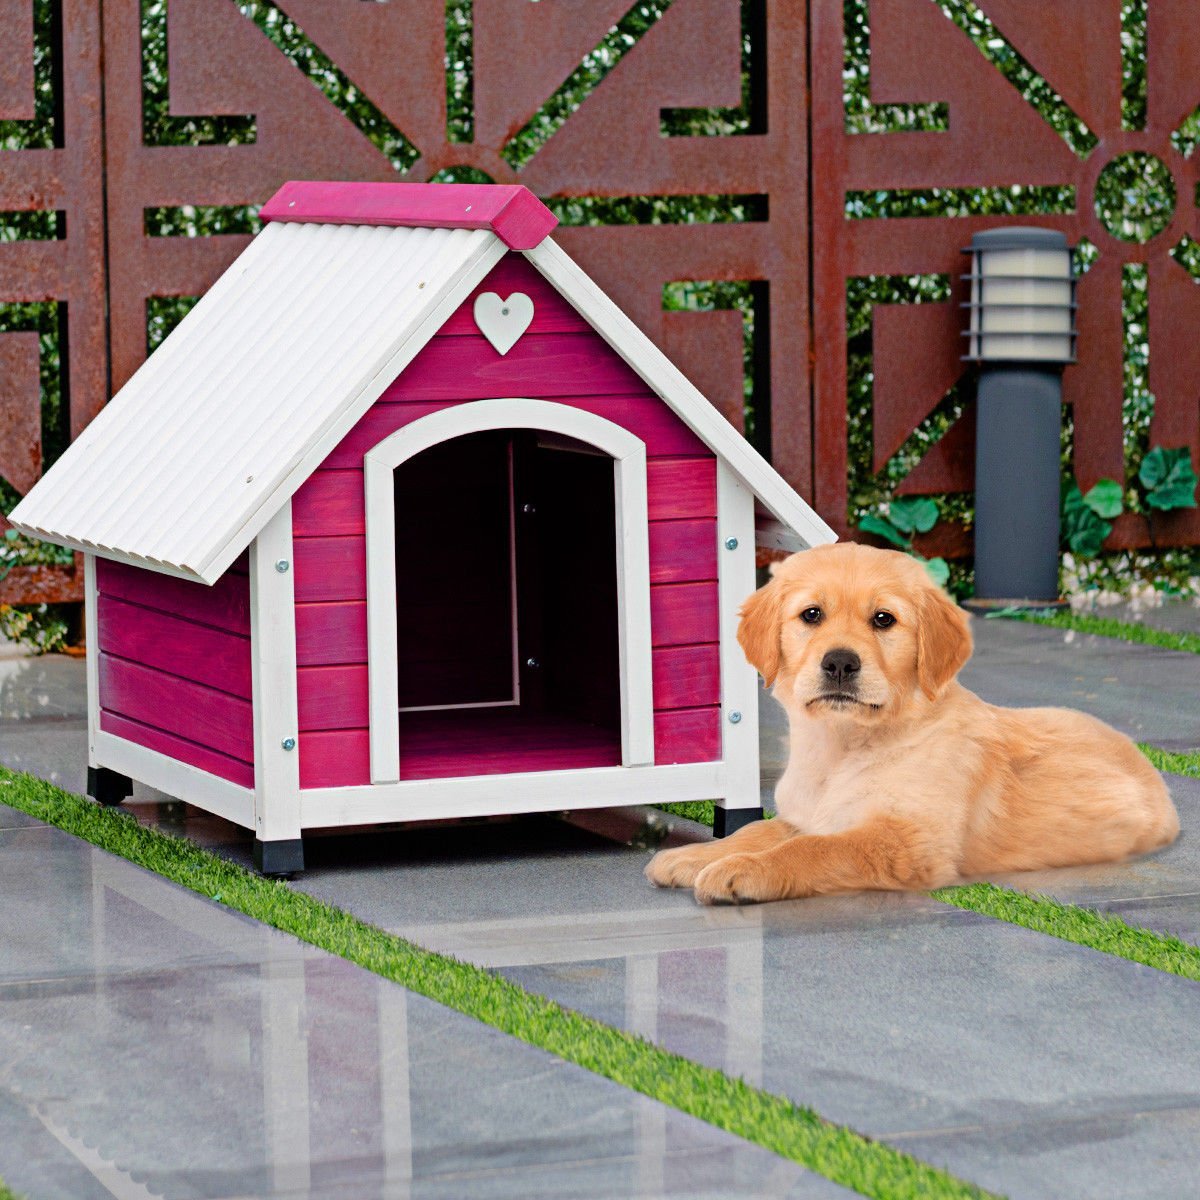 New dog house. Собачья будка. Домик для собачки. Красивые домики для собак. Декоративная будка для собаки.